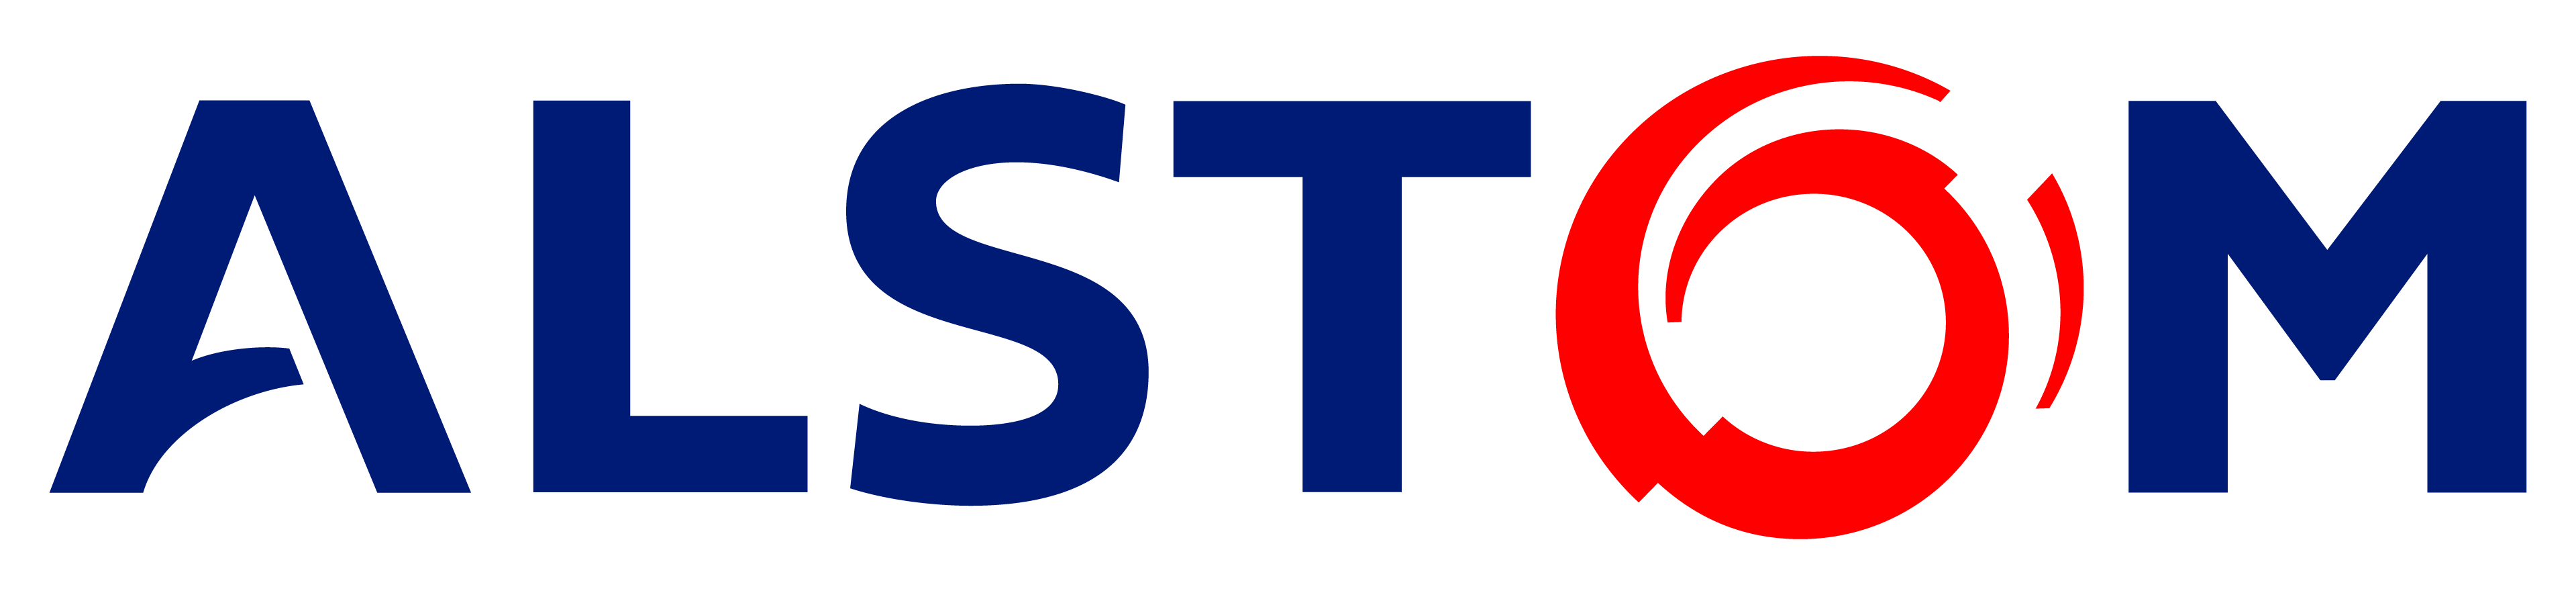 Alstom-logo-big